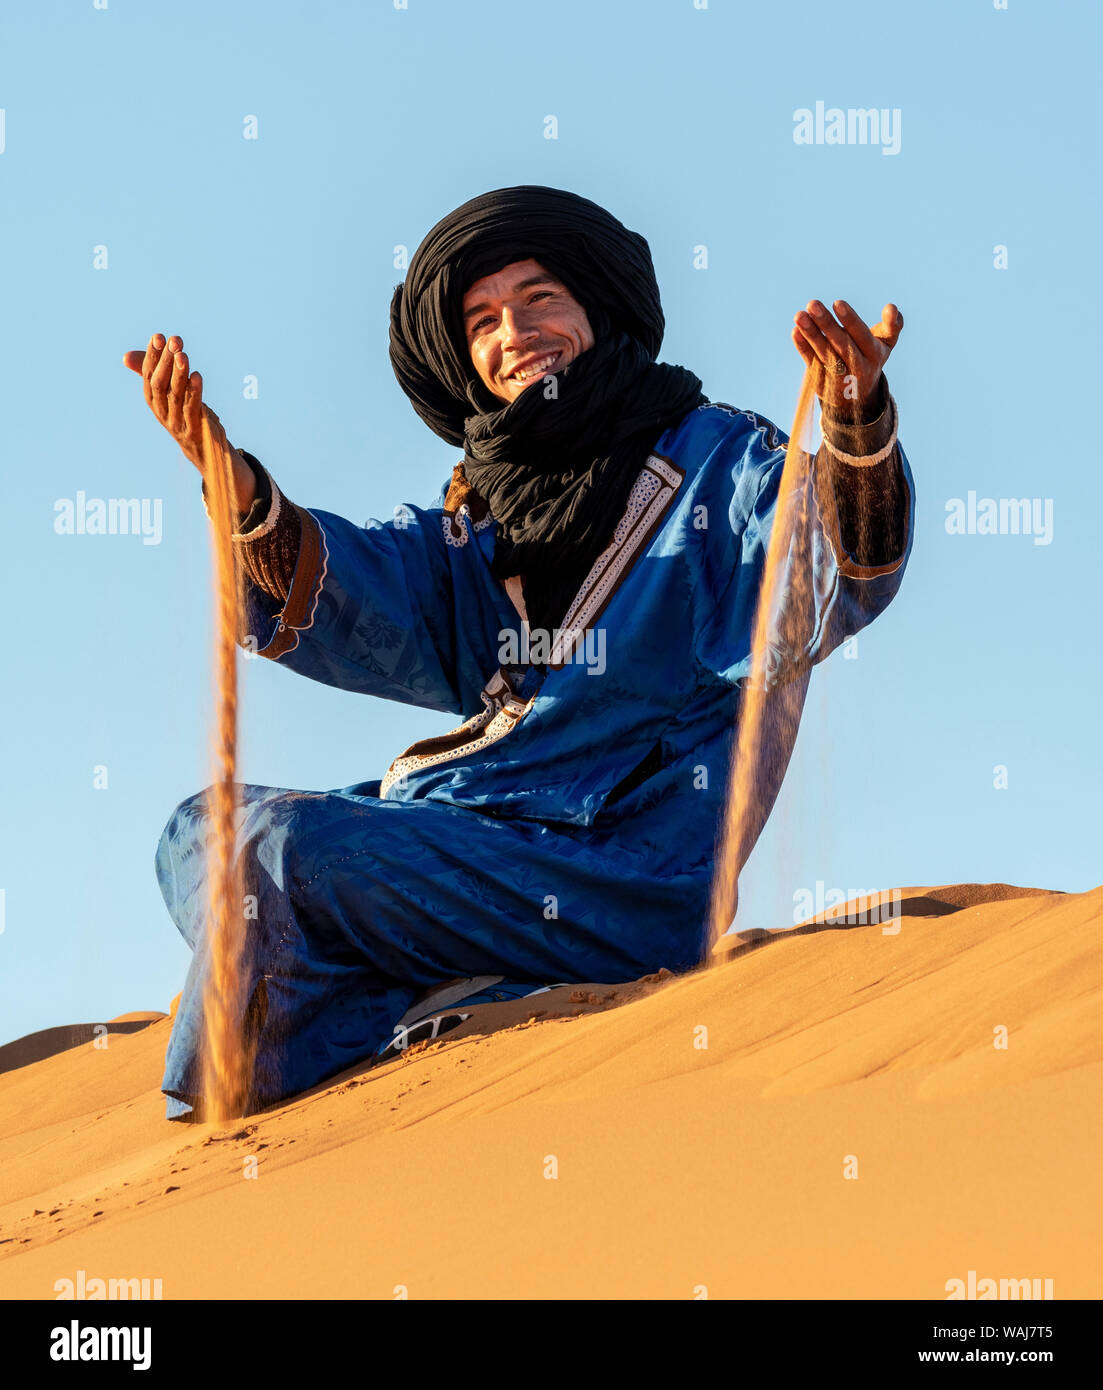 L'Afrique, le Maroc, l'Erg Chebbi. Homme Touareg nomades sur dune jouer avec du sable. En tant que crédit : Bill Young / Jaynes Gallery / DanitaDelimont.com (usage éditorial uniquement) Banque D'Images